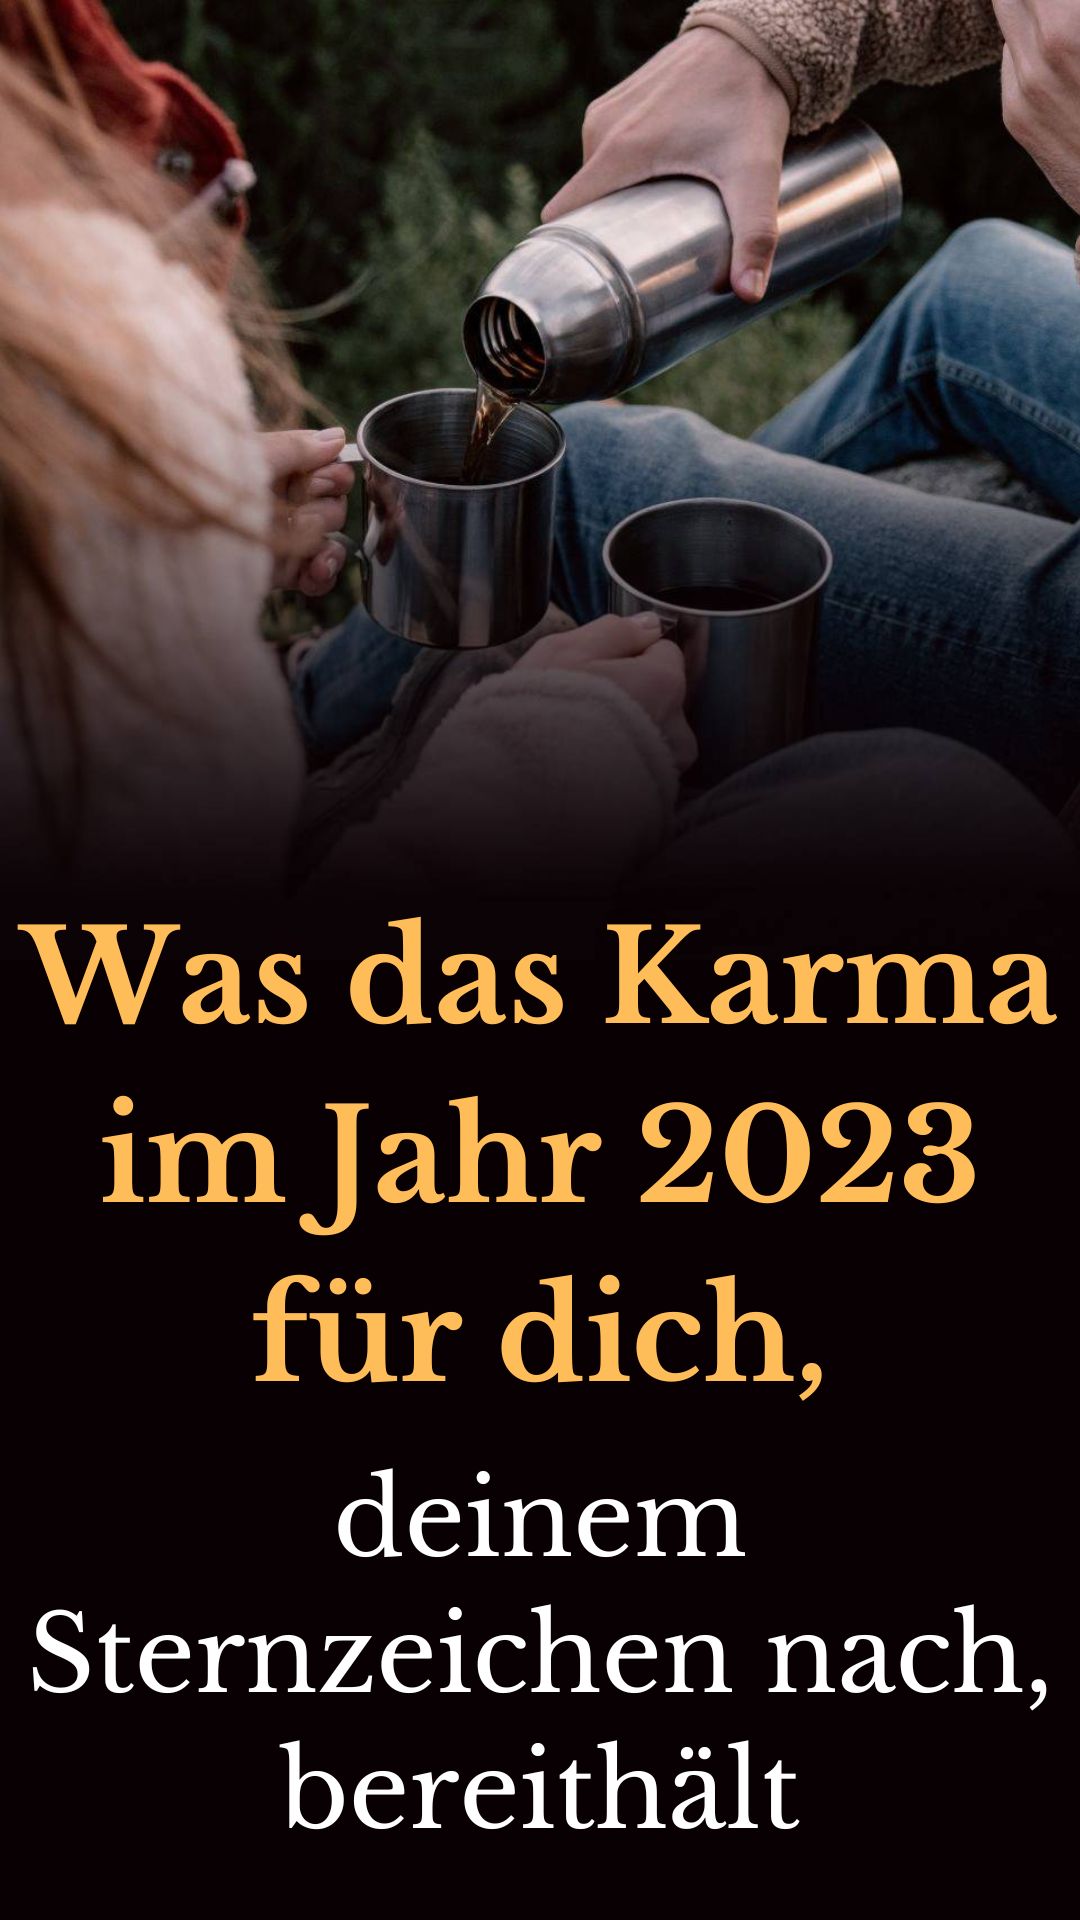 Was-das-Karma-im-Jahr-2023-fuer-dich-deinem-Sternzeichen-nach-bereithaelt